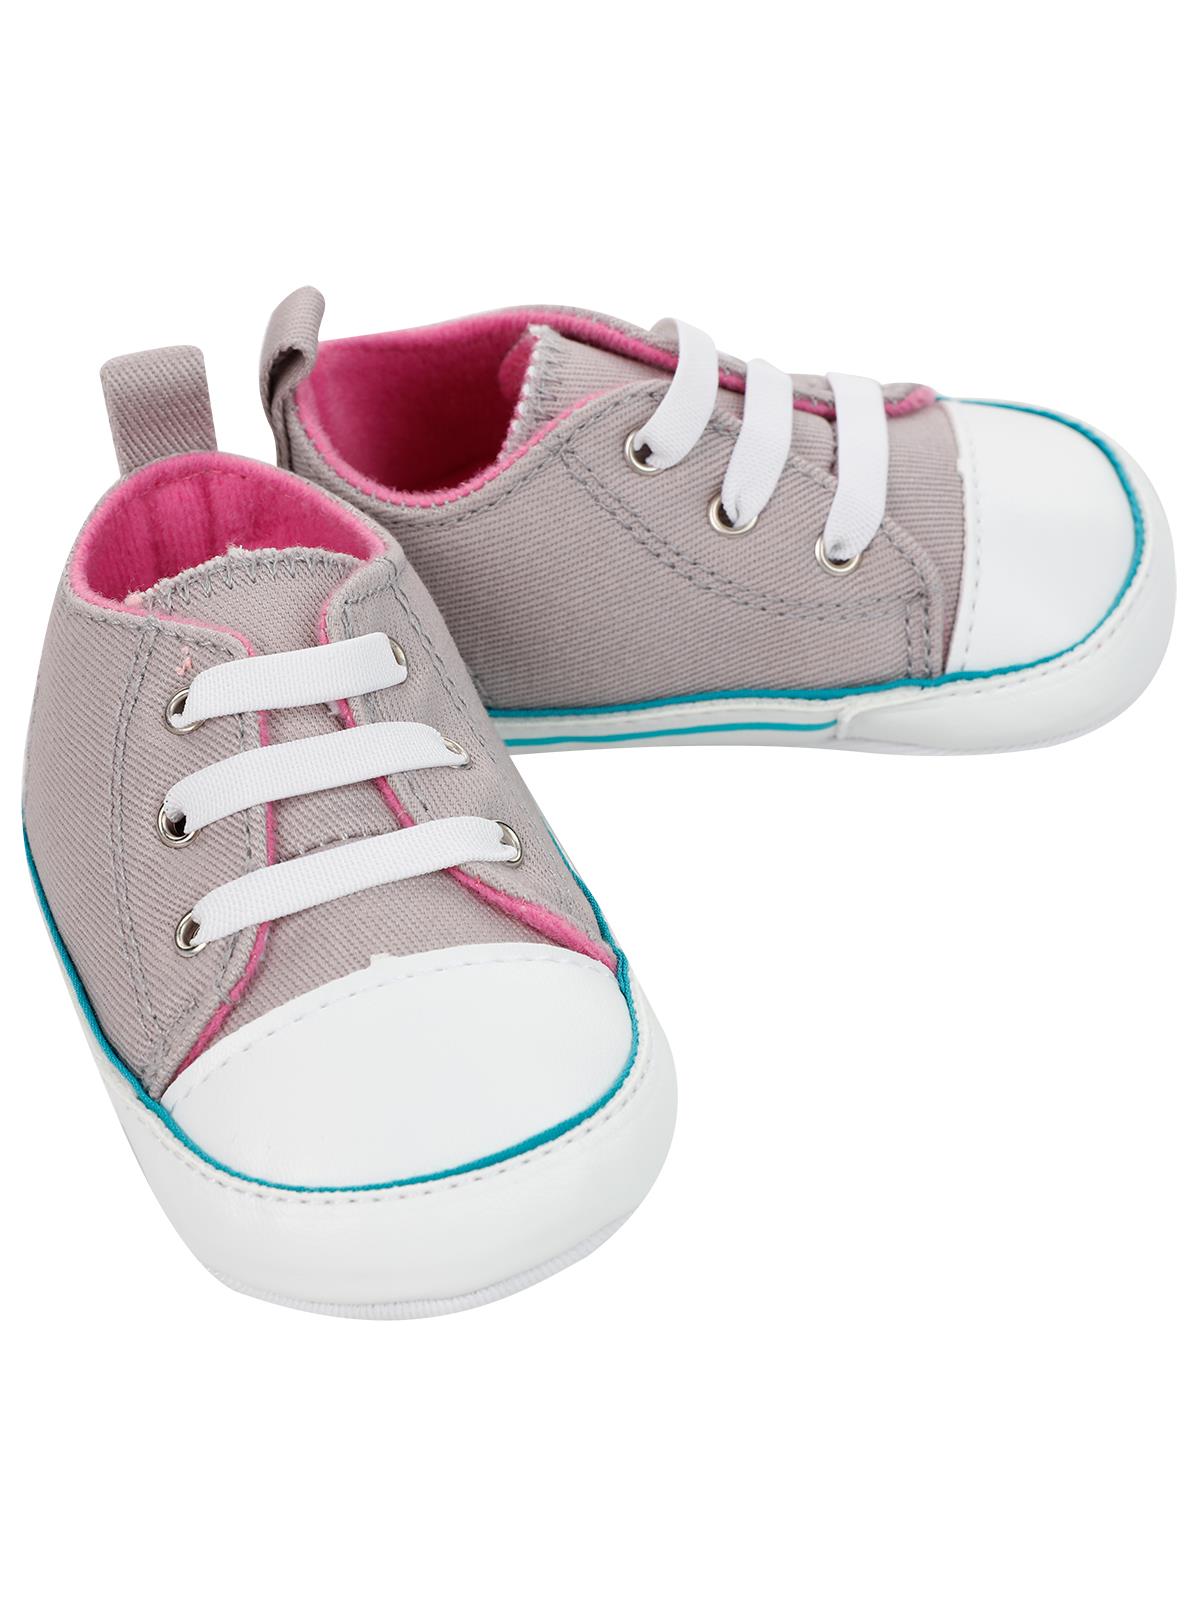 Civil Baby Kız Bebek Patik Ayakkabı 18-20 Numara Gri